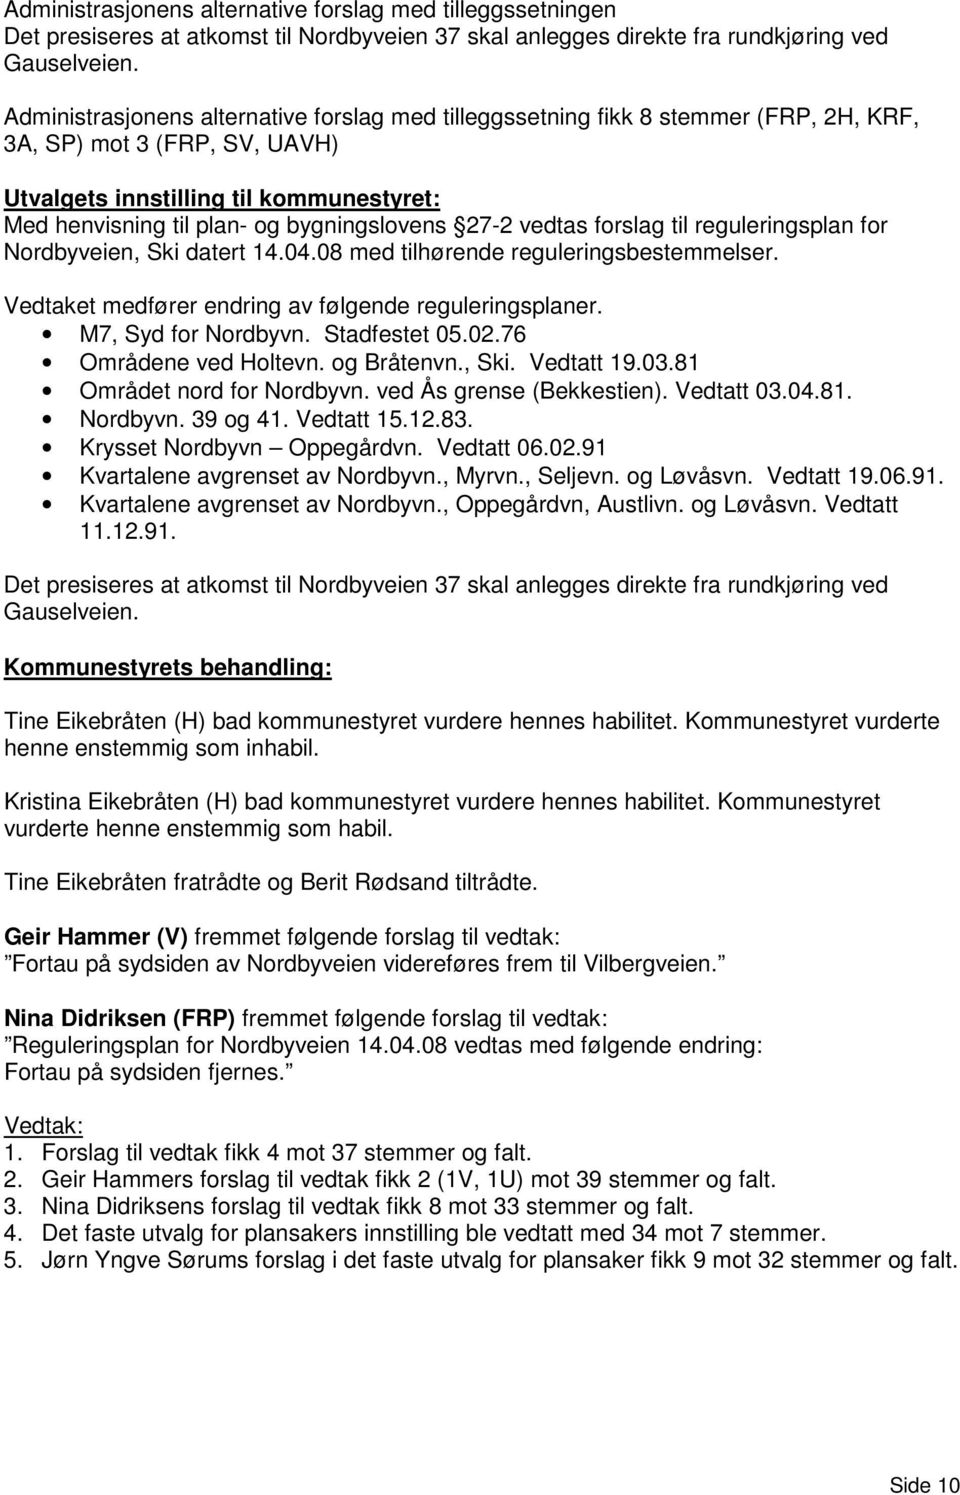 bygningslovens 27-2 vedtas forslag til reguleringsplan for Nordbyveien, Ski datert 14.04.08 med tilhørende reguleringsbestemmelser. Vedtaket medfører endring av følgende reguleringsplaner.